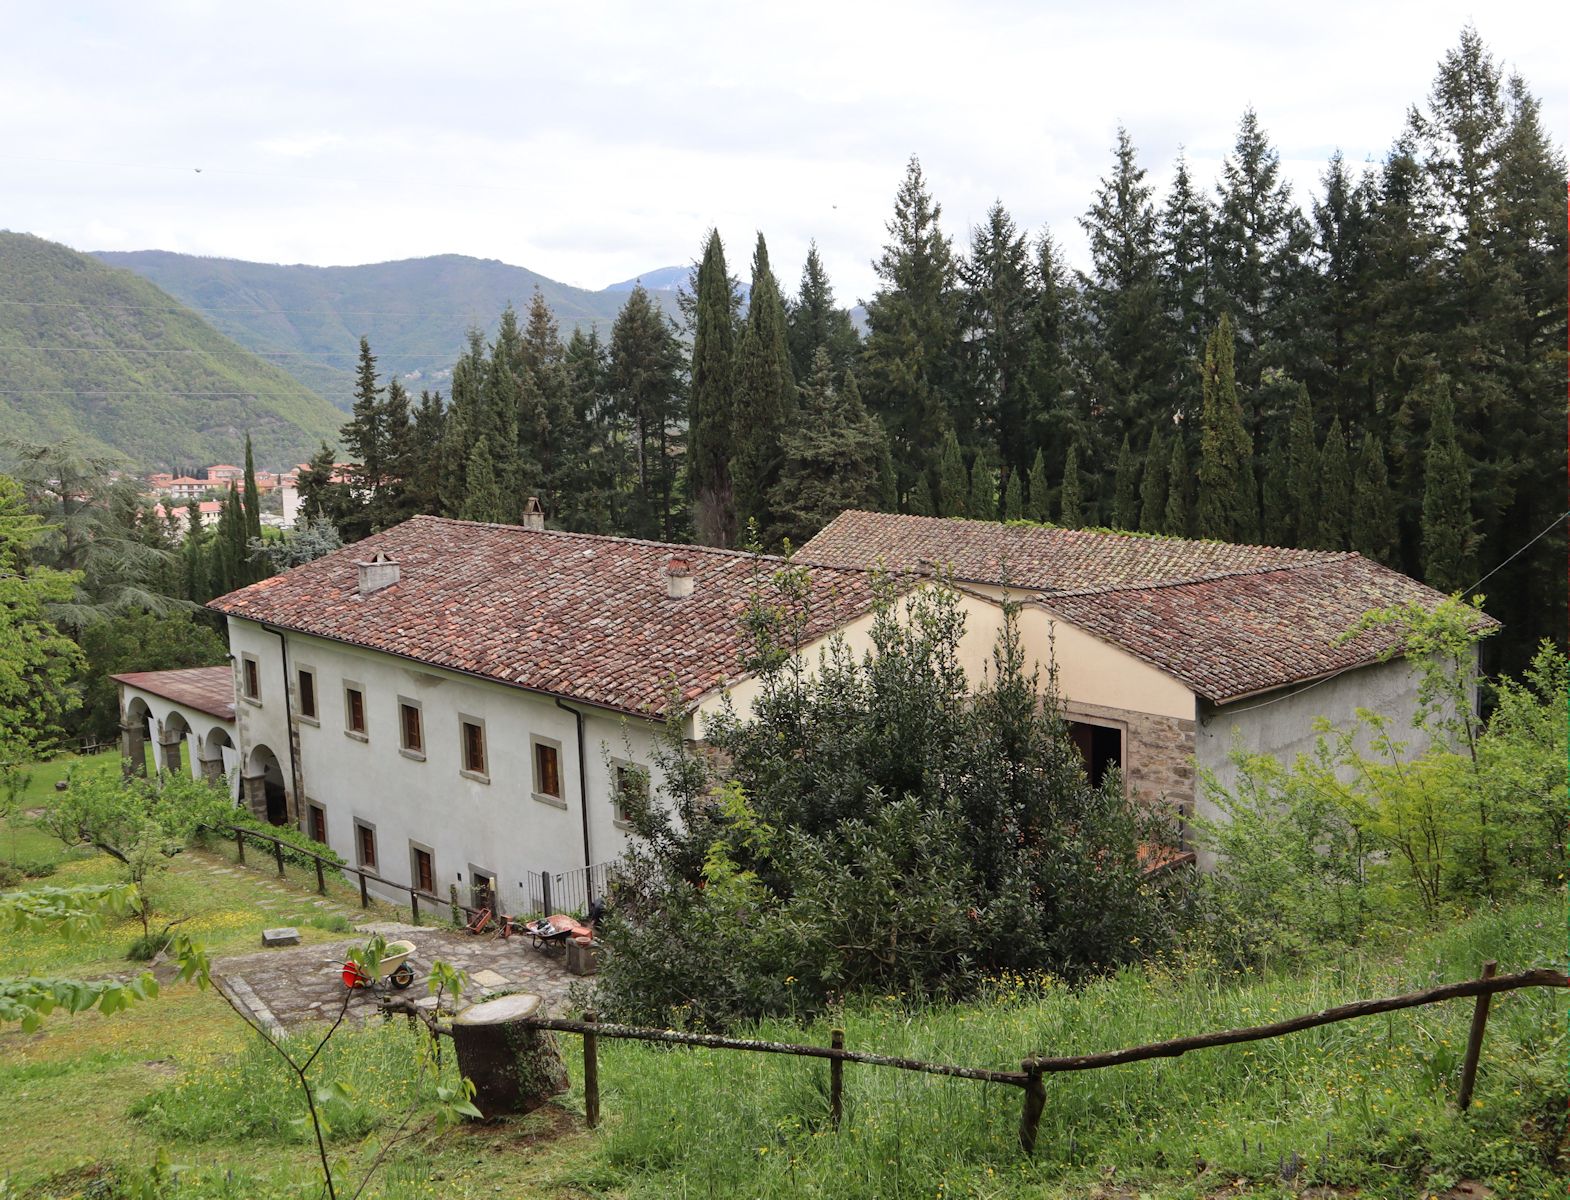 ehemaliges Kloster der Karmeliter oberhalb von Fivizzano